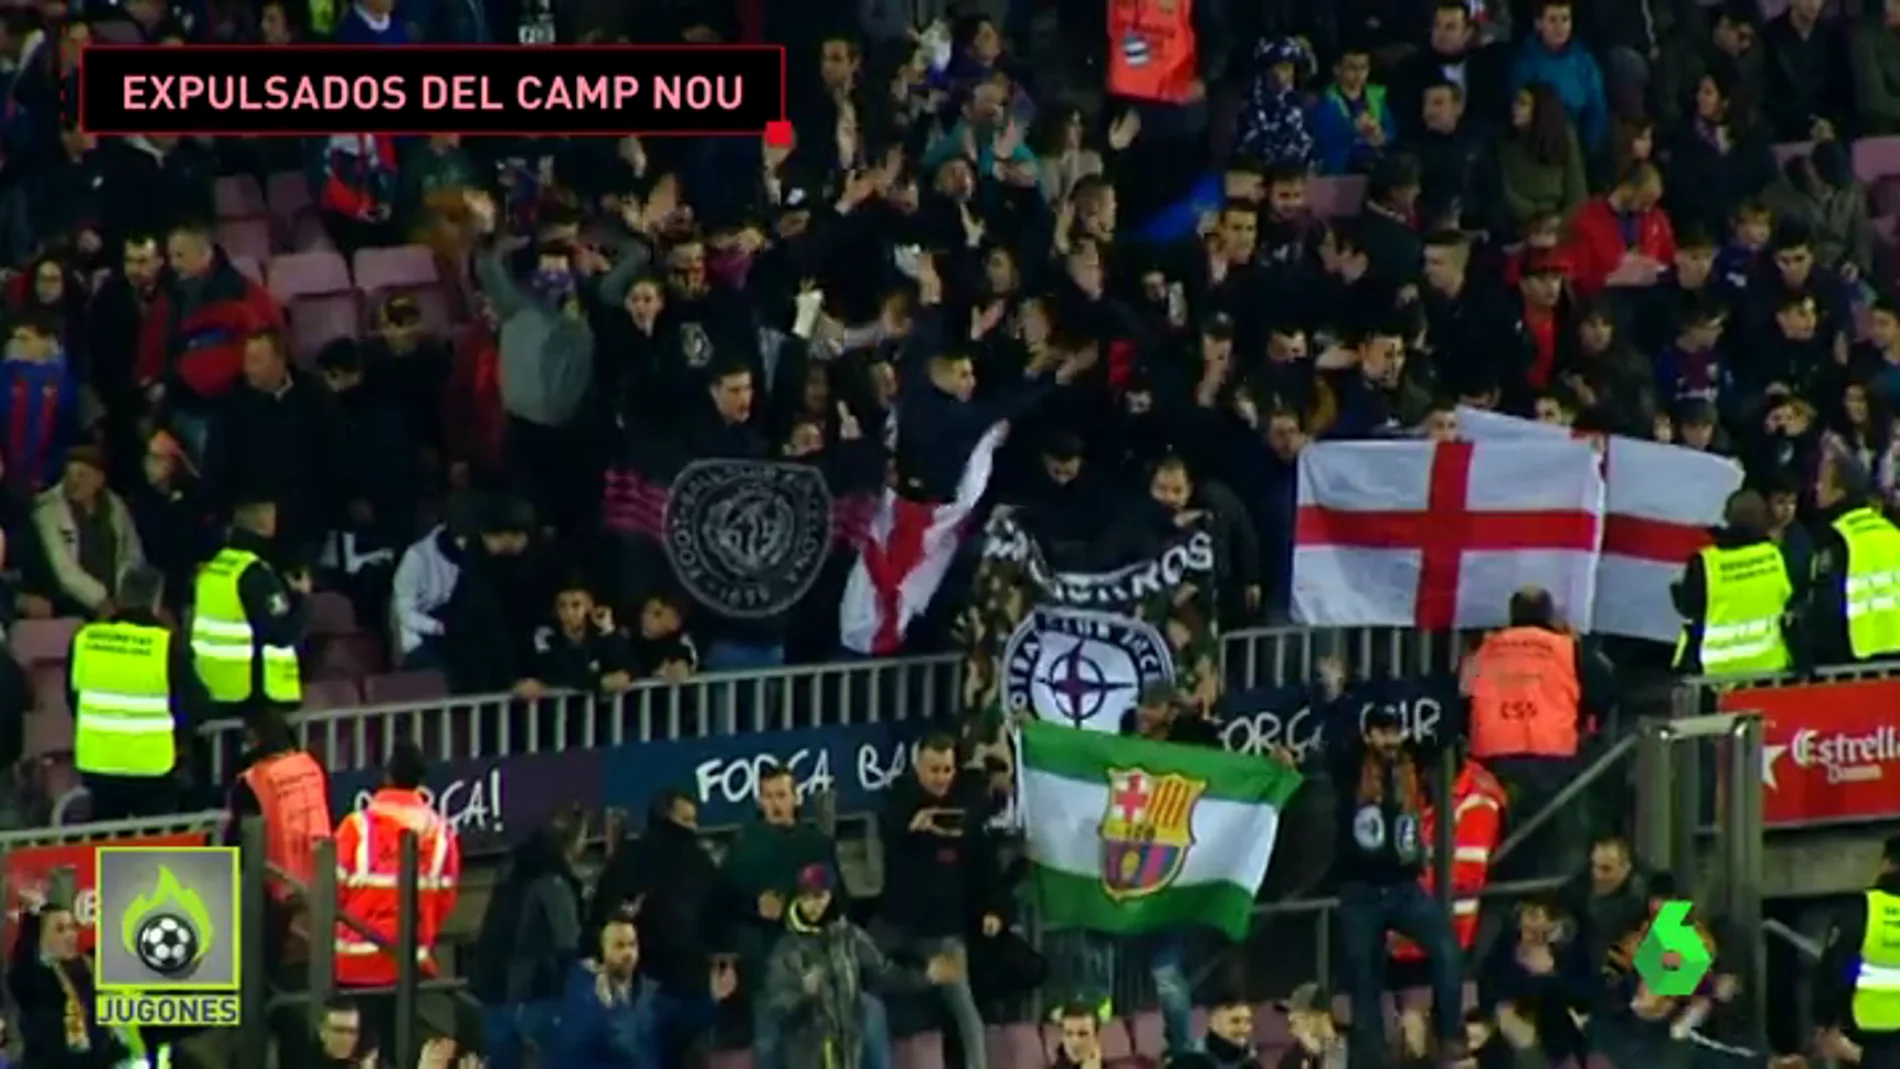 Expulsan a un grupo nazi del Camp Nou